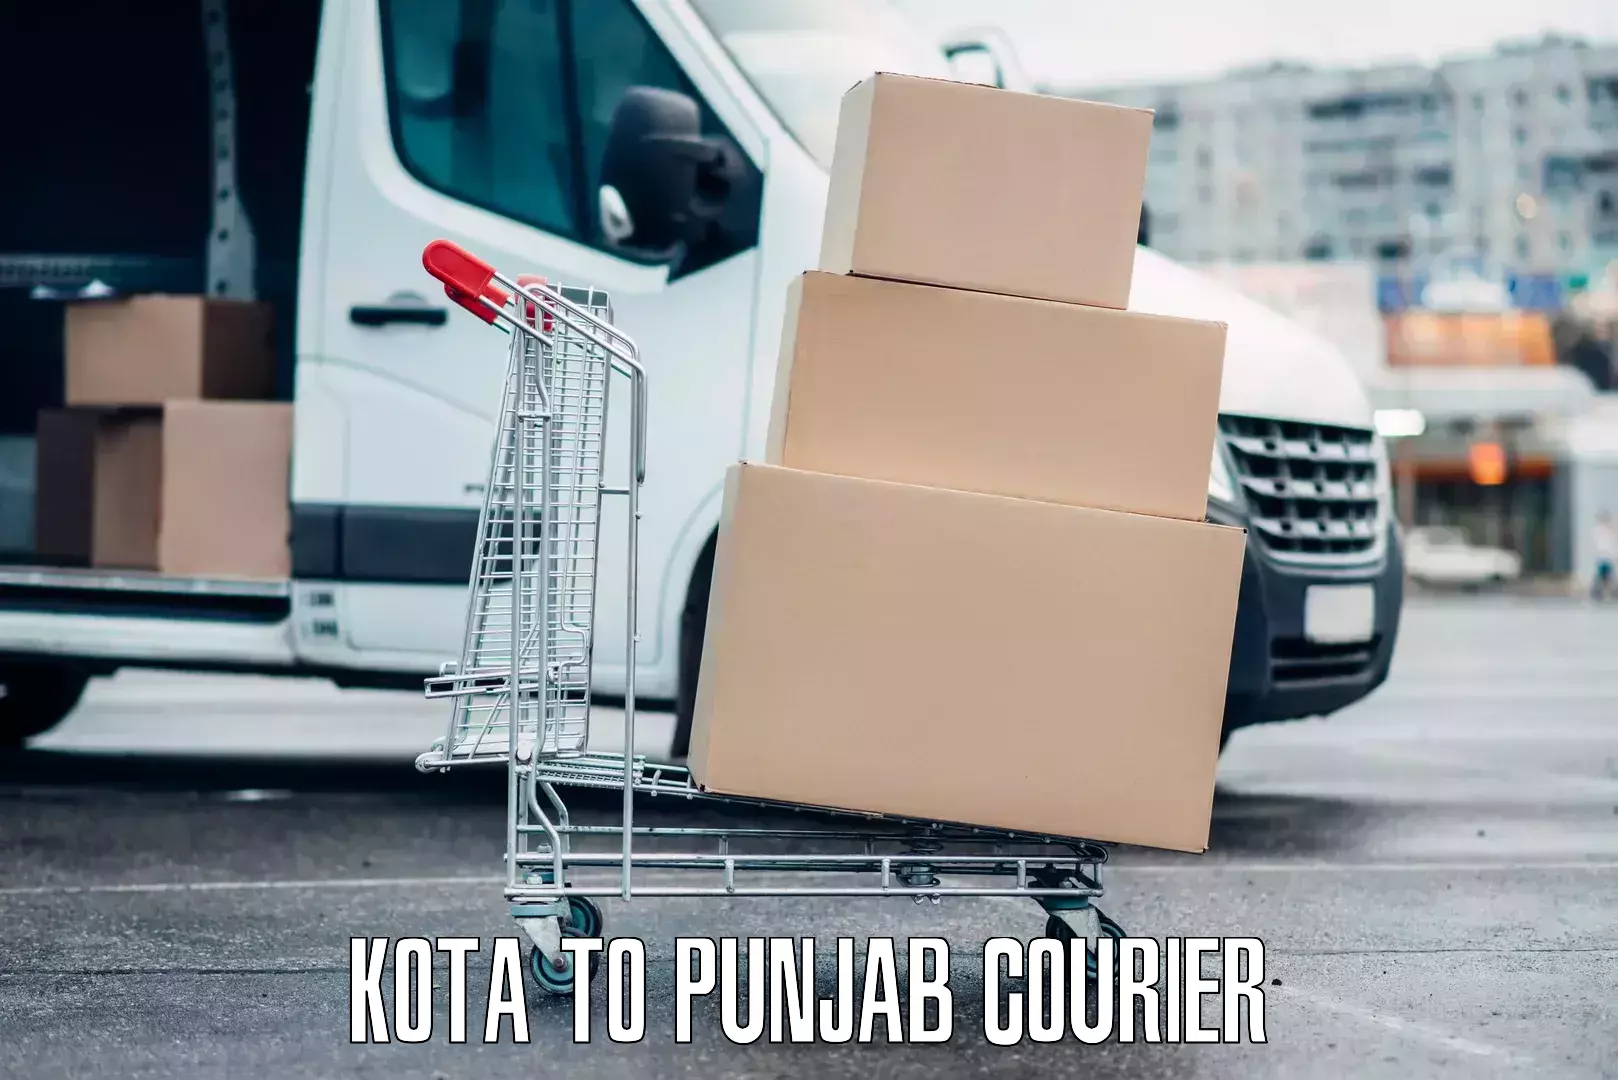 Holiday season luggage delivery Kota to Punjab